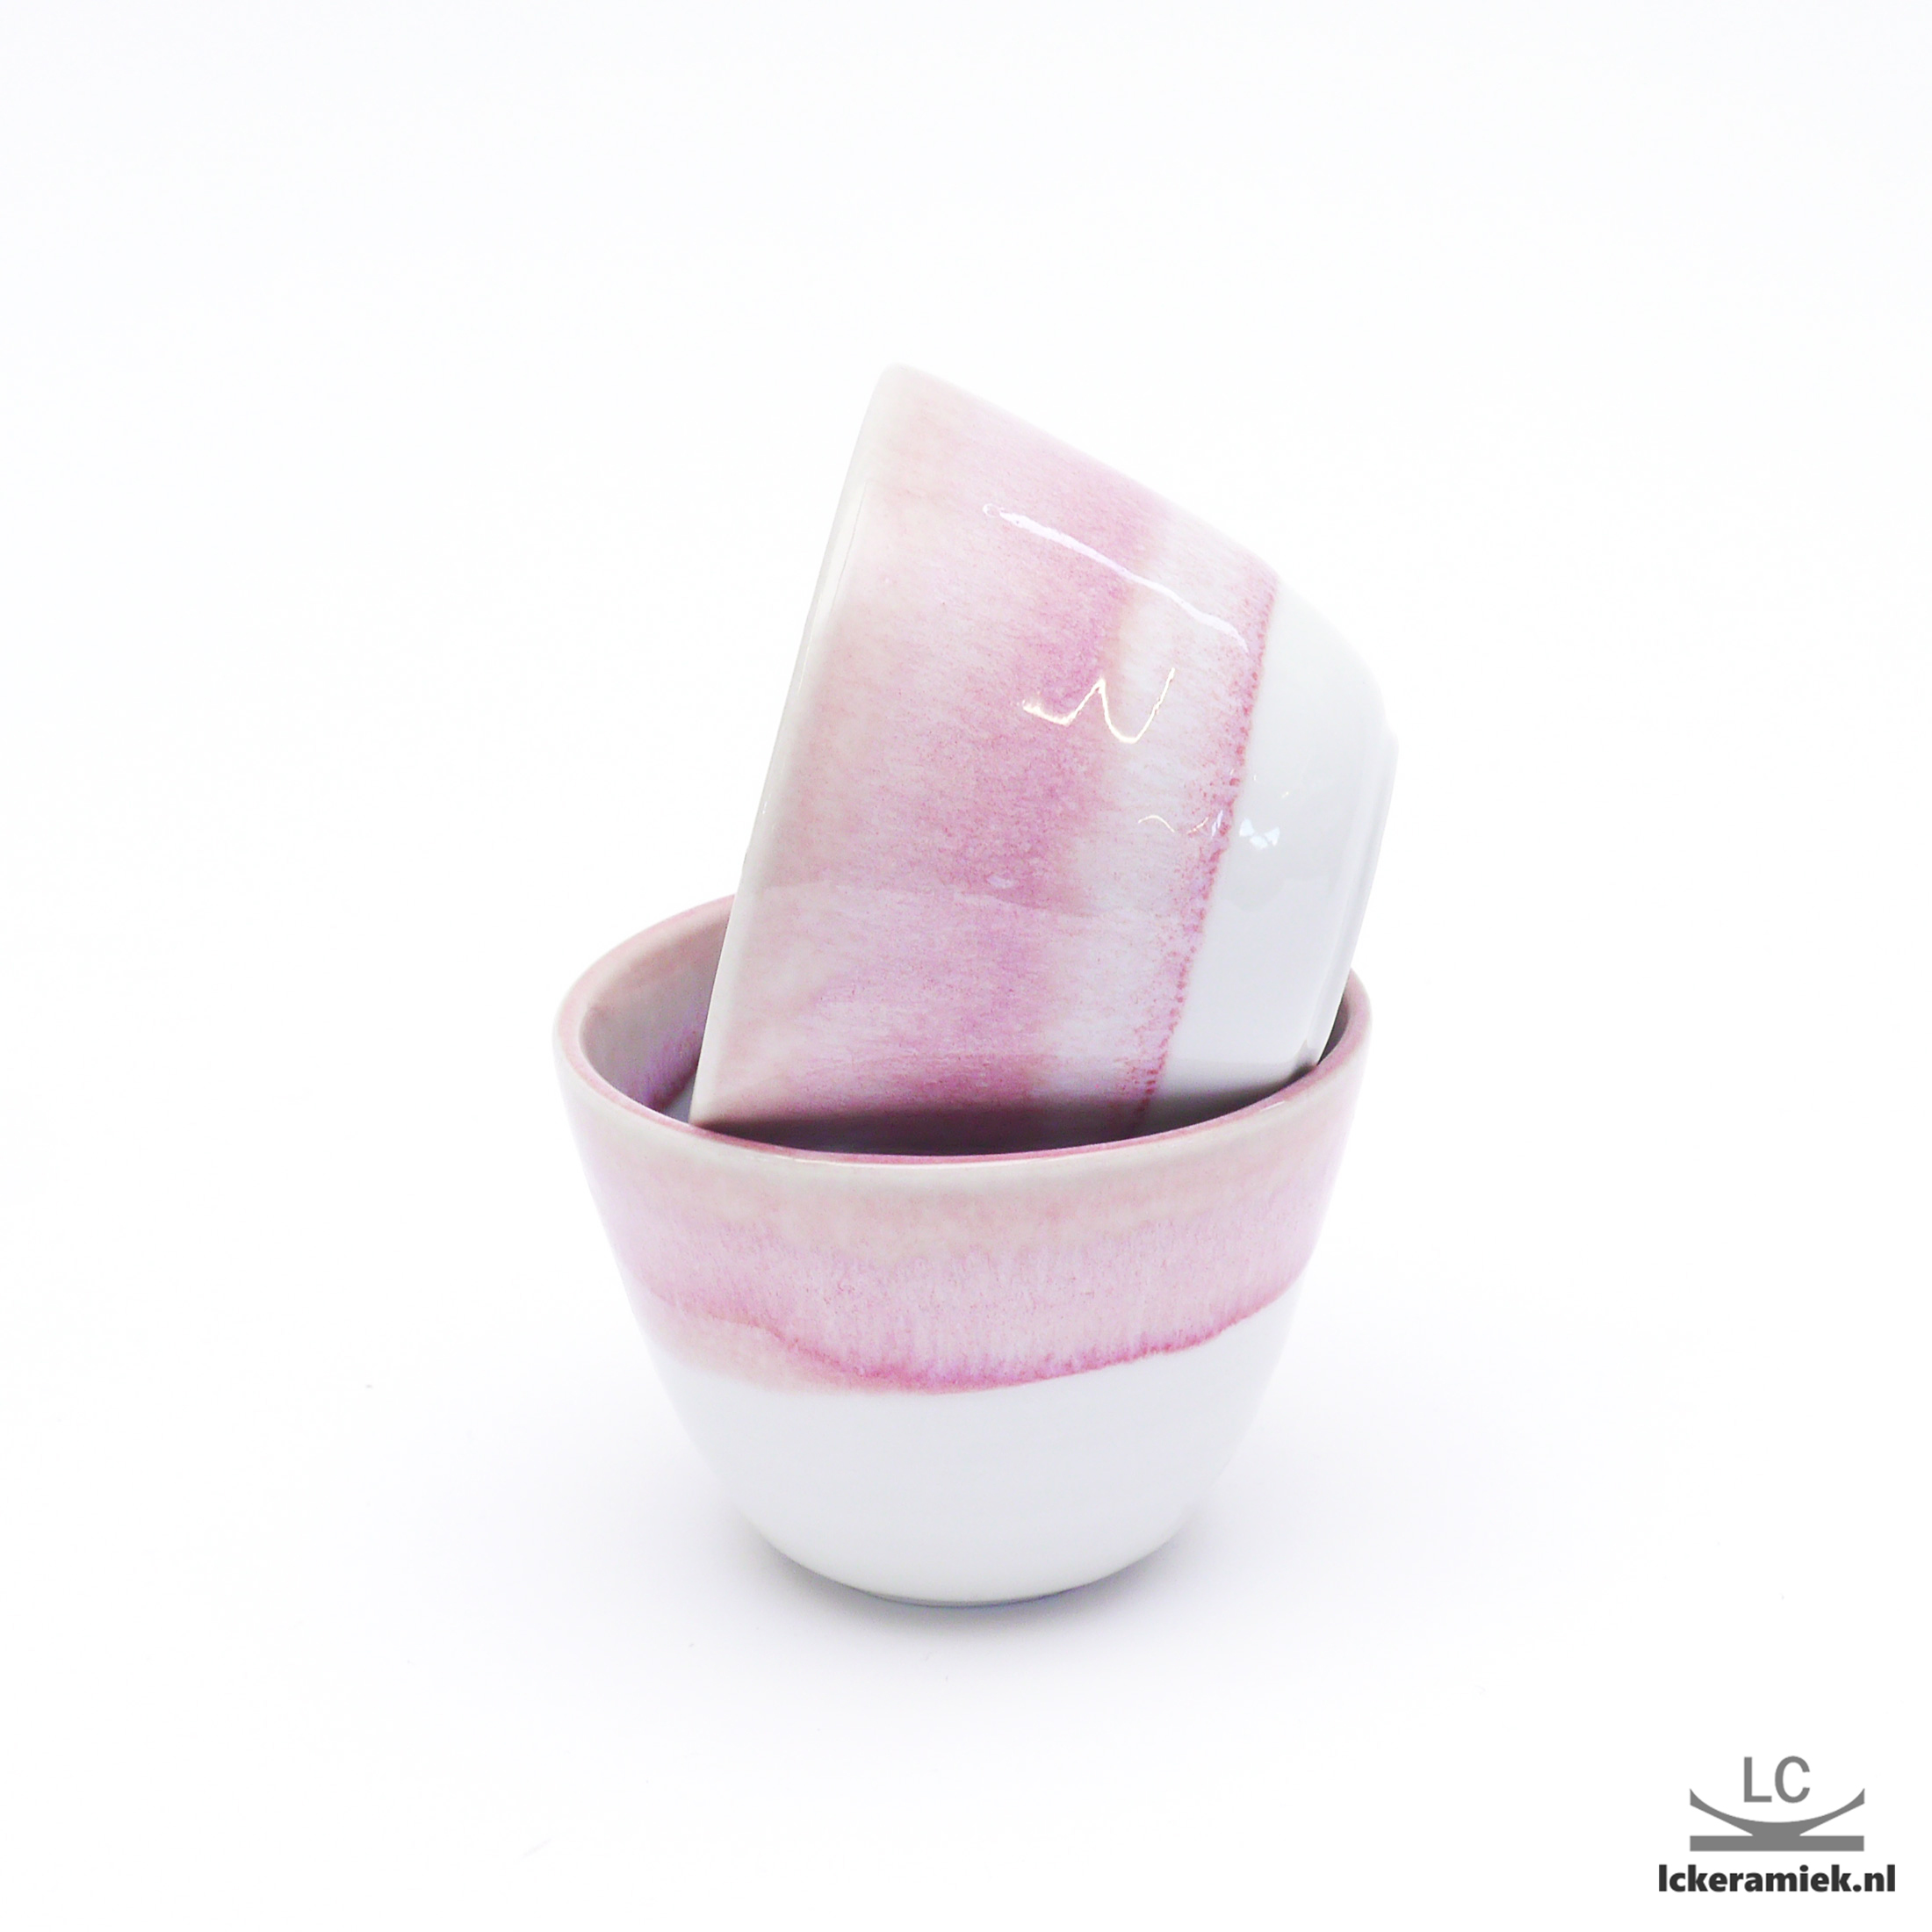 Porseleinen espressokopje suikerspin roze